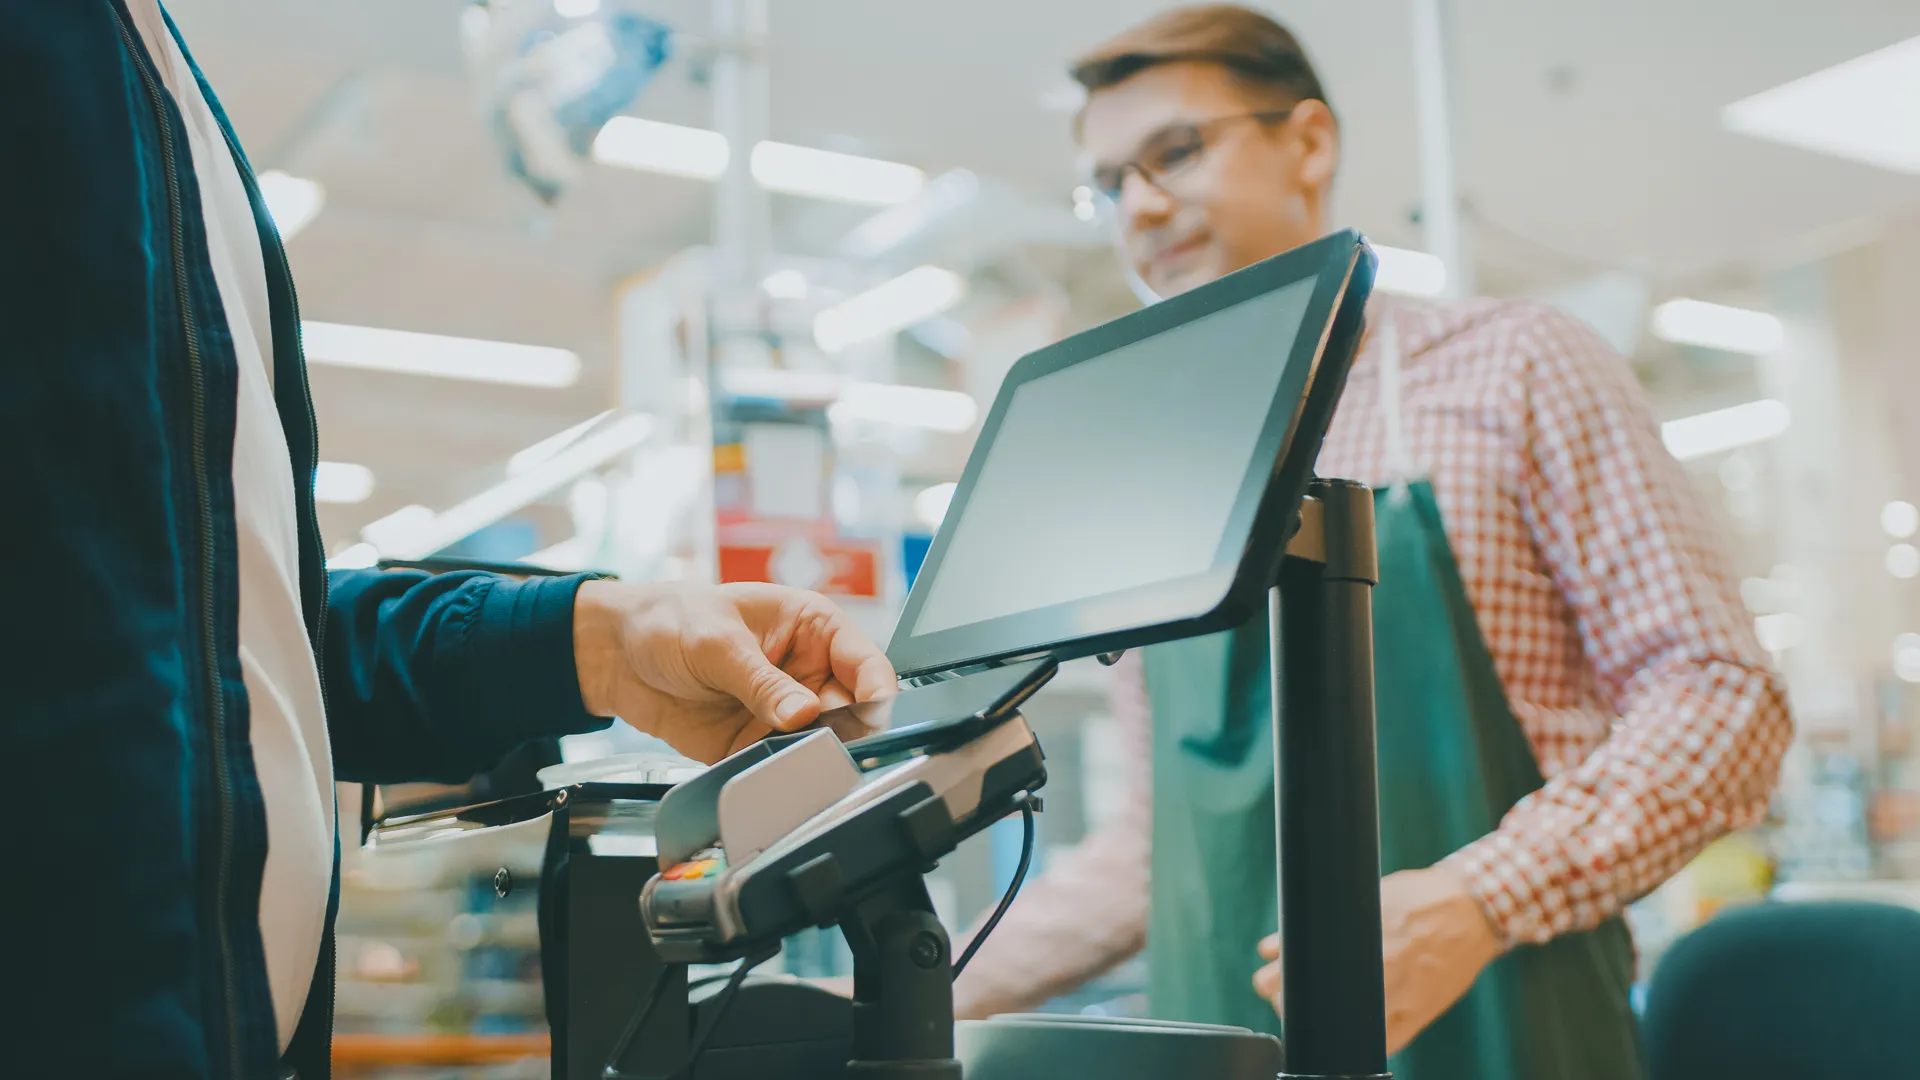 在超市:收银台顾客用智能手机为他的食品付款。